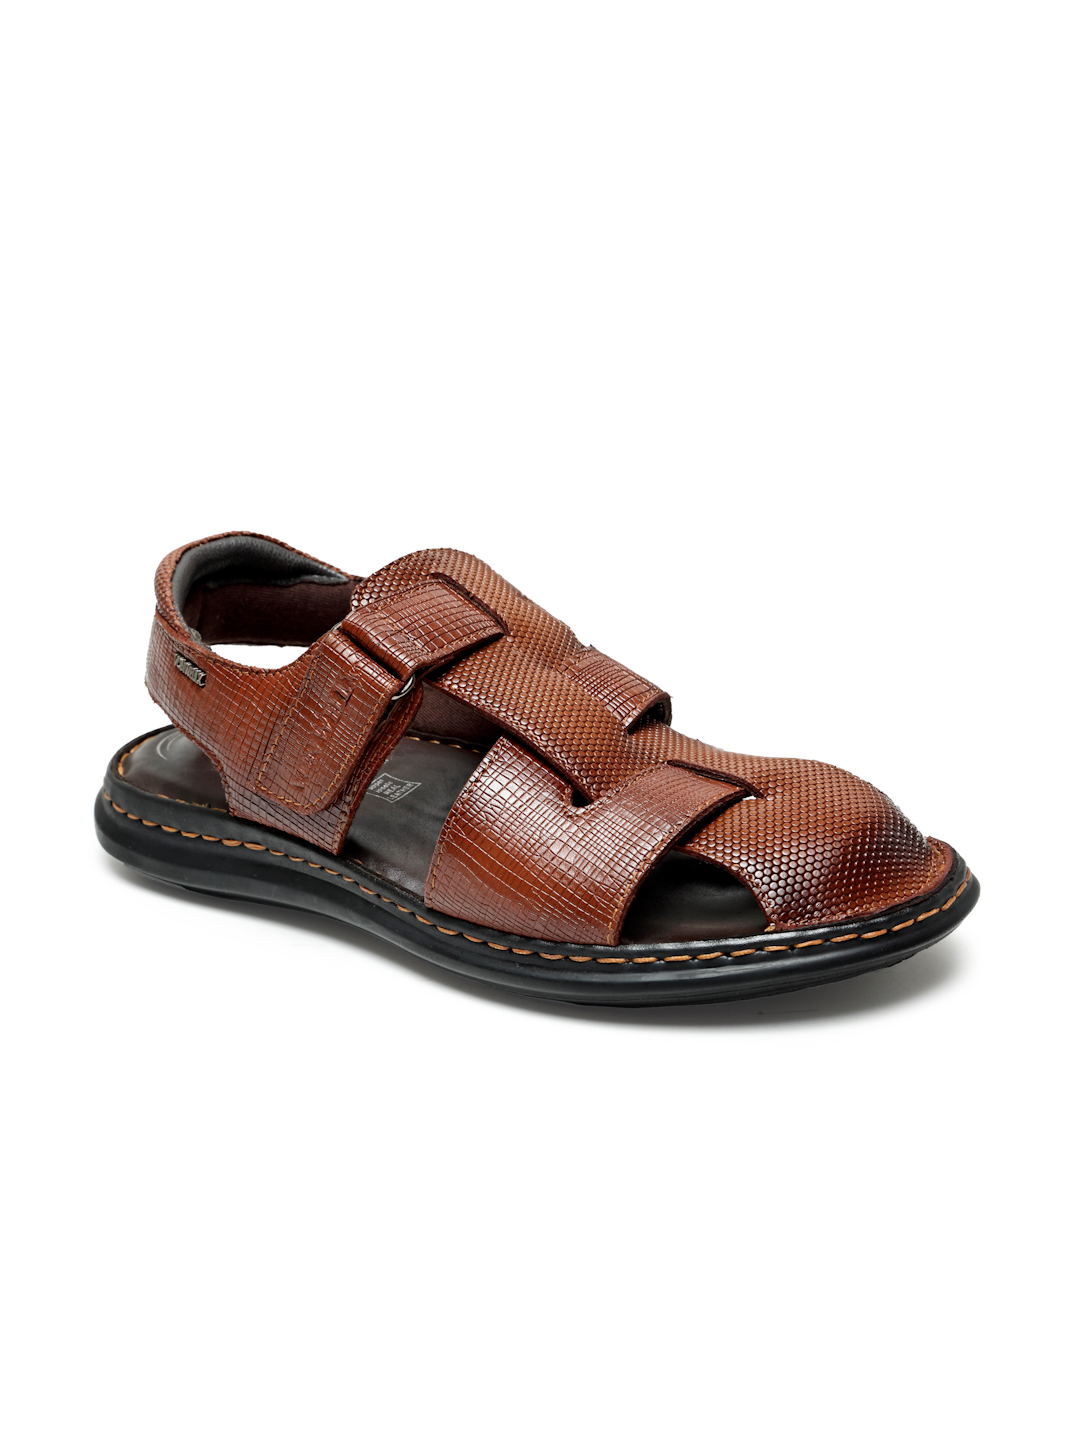 Buy Von Wellx Germany Comfort Men's Tan Sandals Morgen Online in Bhubaneswar